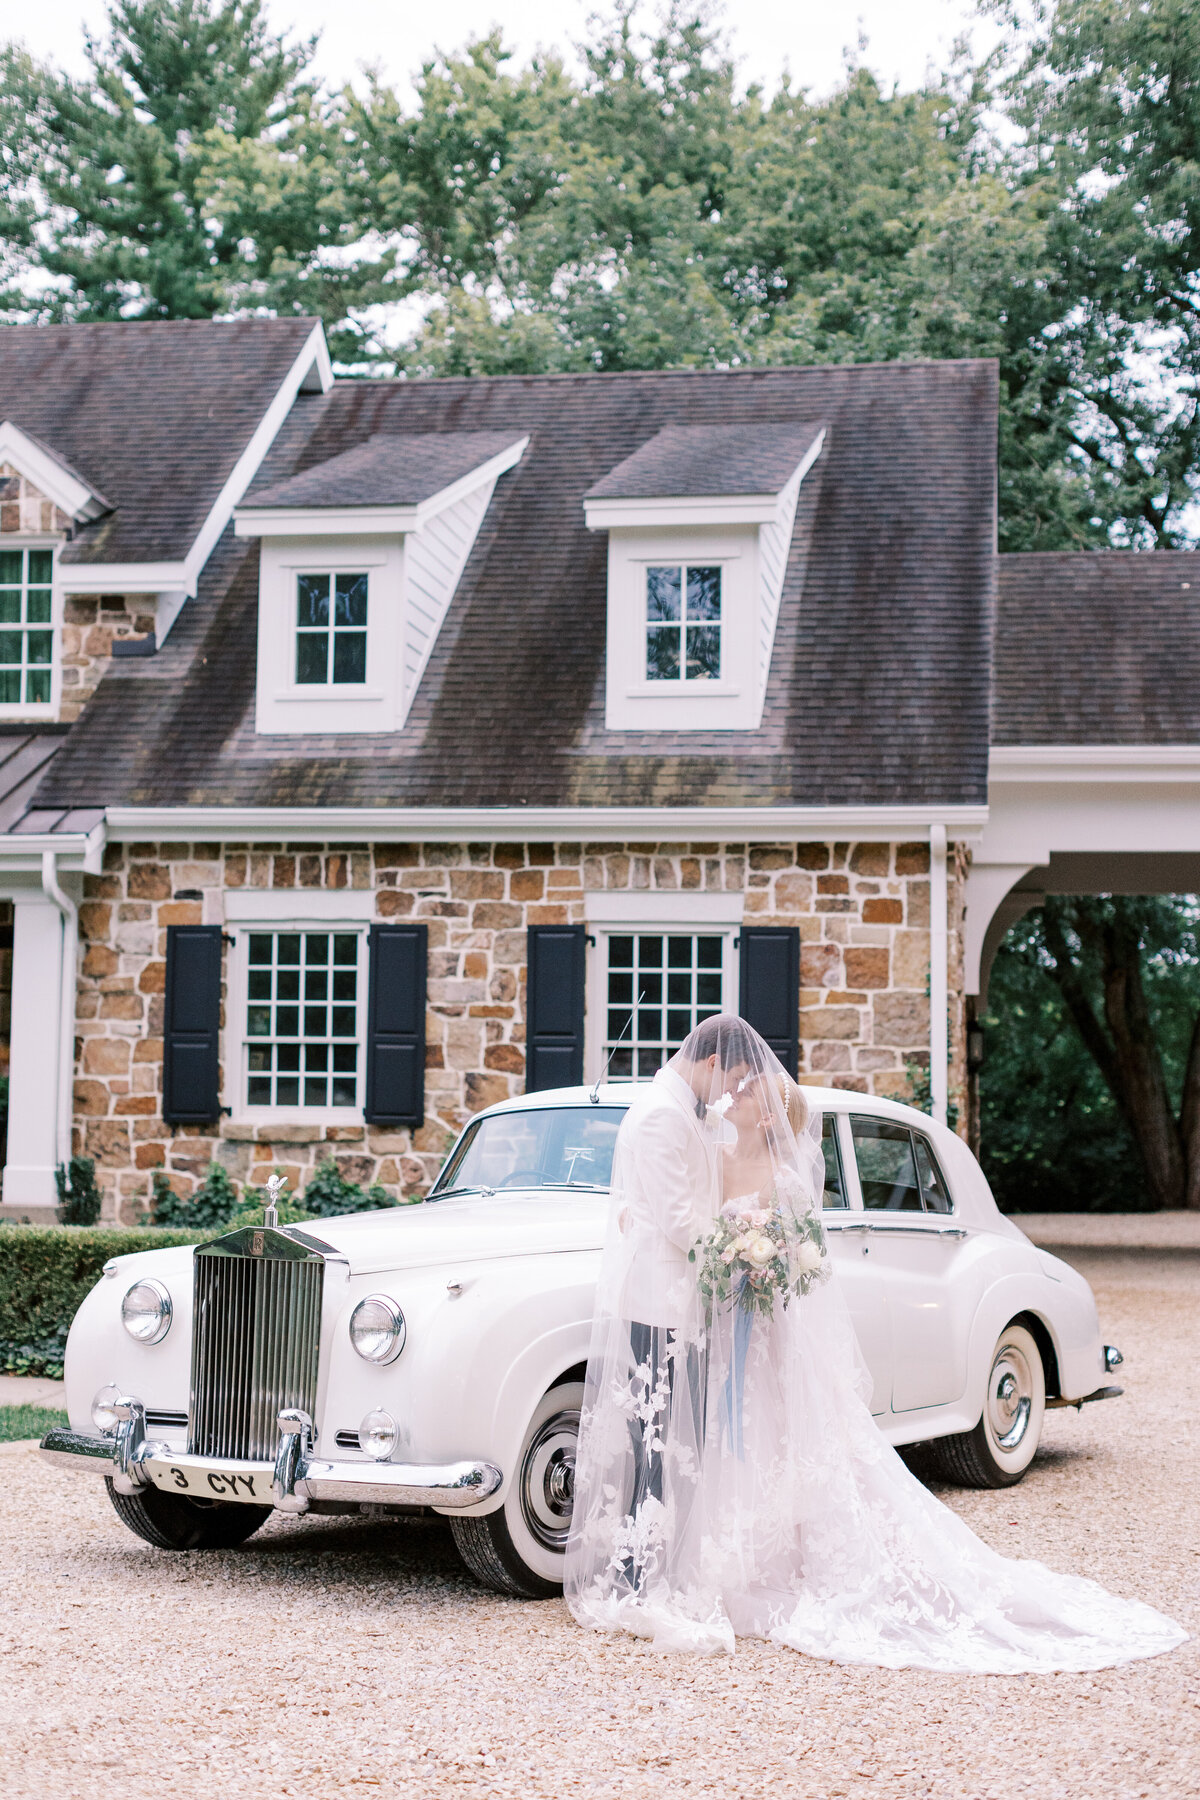 Classic Rolls Royce used as a wedding get away car